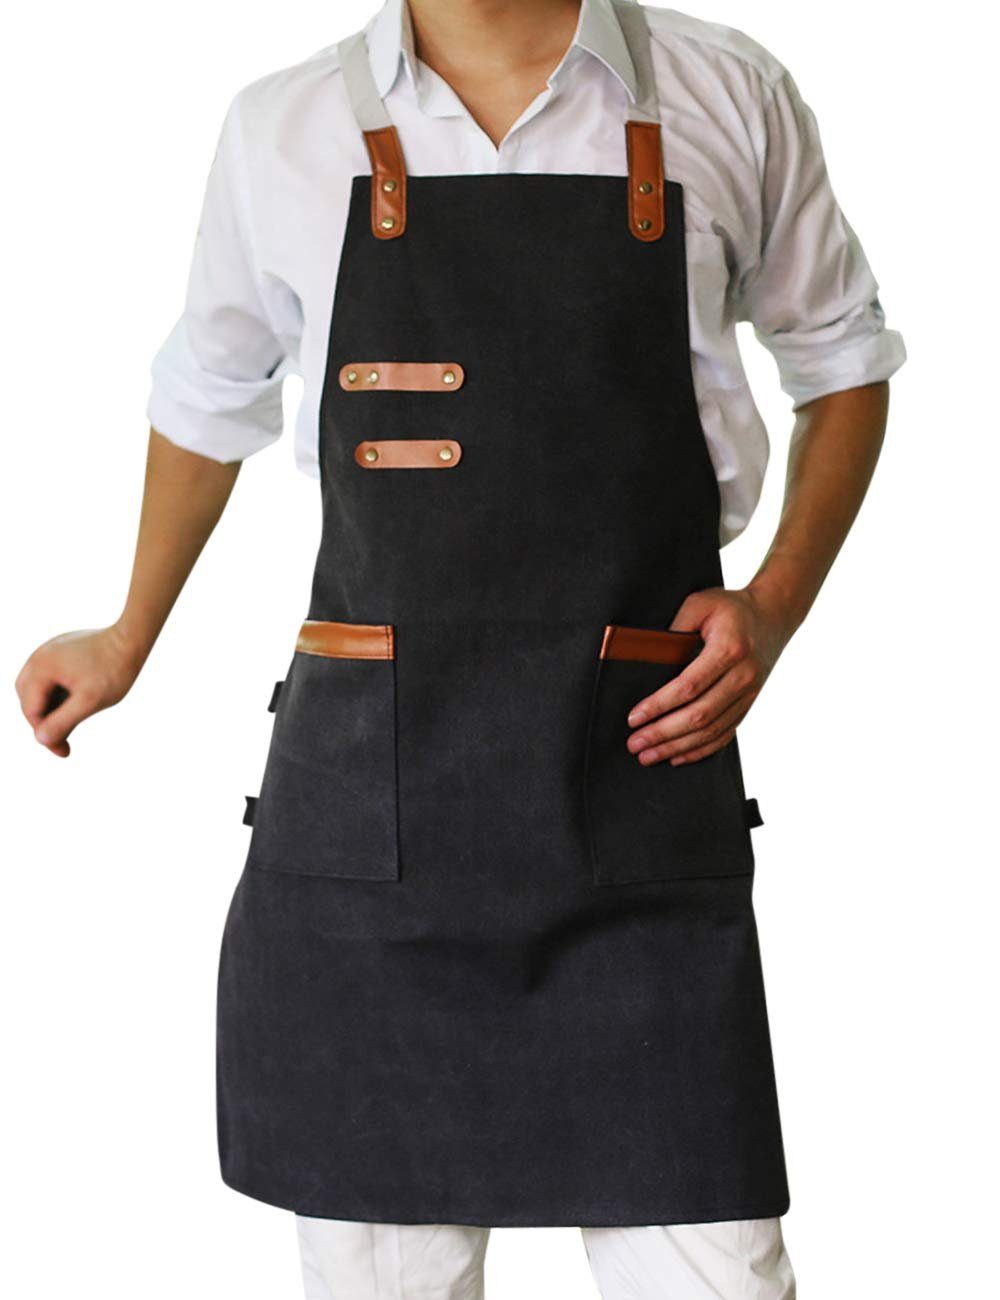 Housruse Kochschürze Gewaschene Leinwand-Schürze mit Doppeltaschen - Unisex- Arbeitskleidung